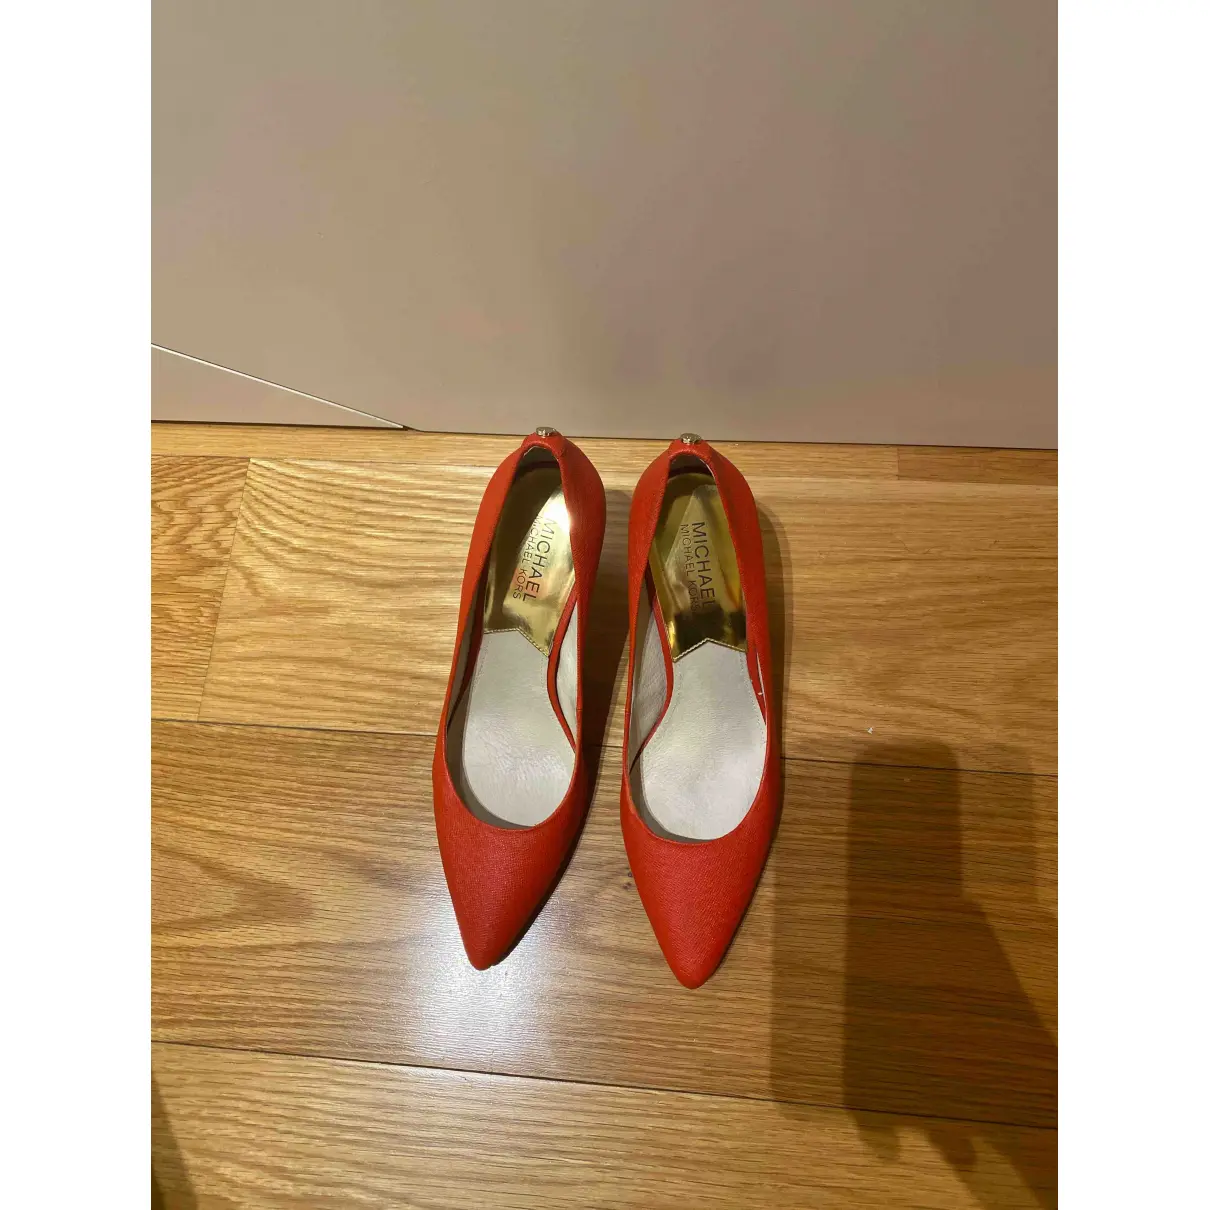 Buy Michael Kors Leather heels online